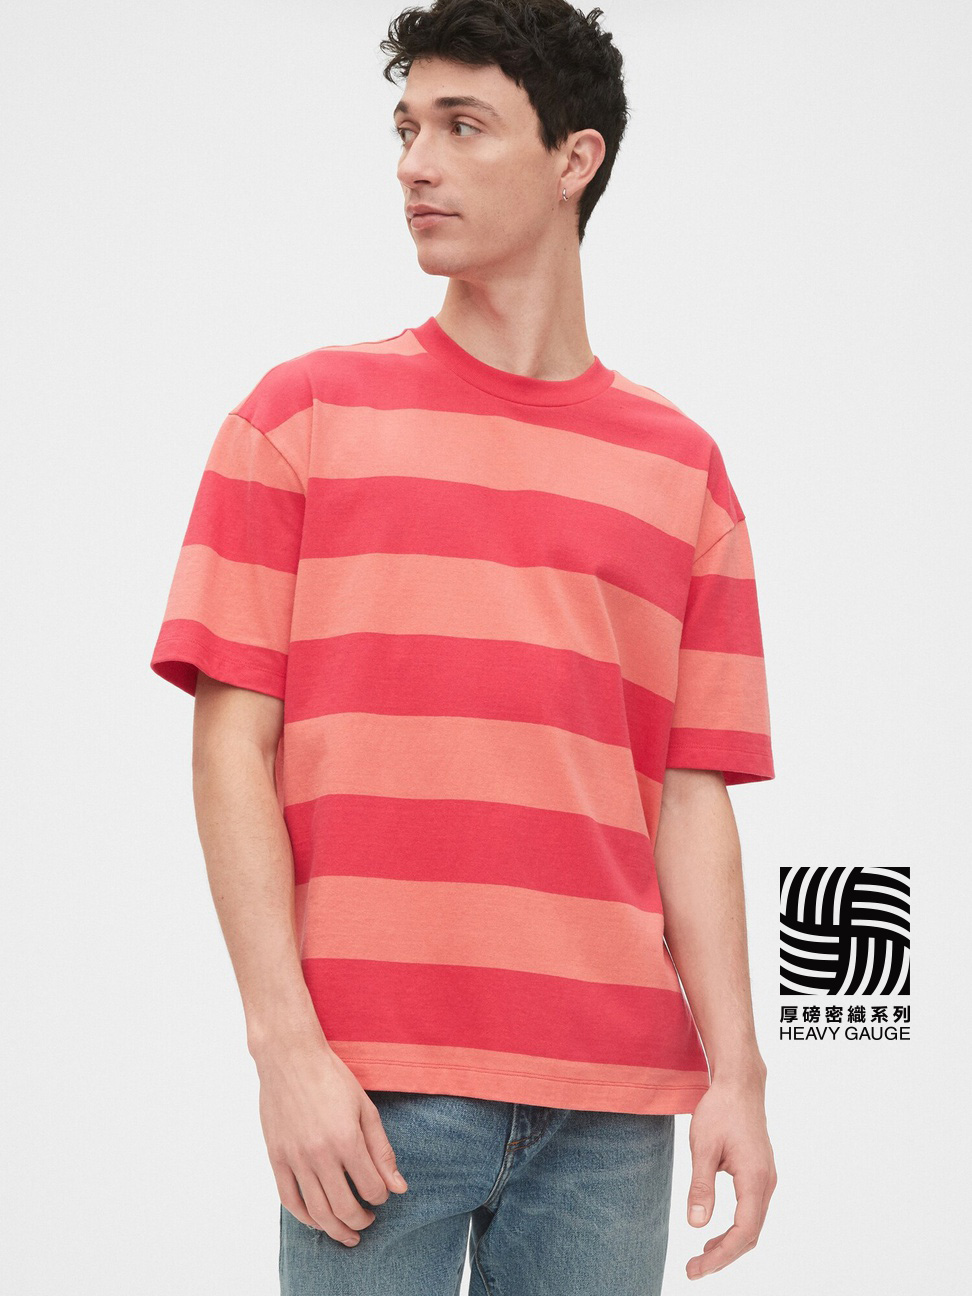 男裝|舒適圓領條紋短袖T恤-夏威夷紅色